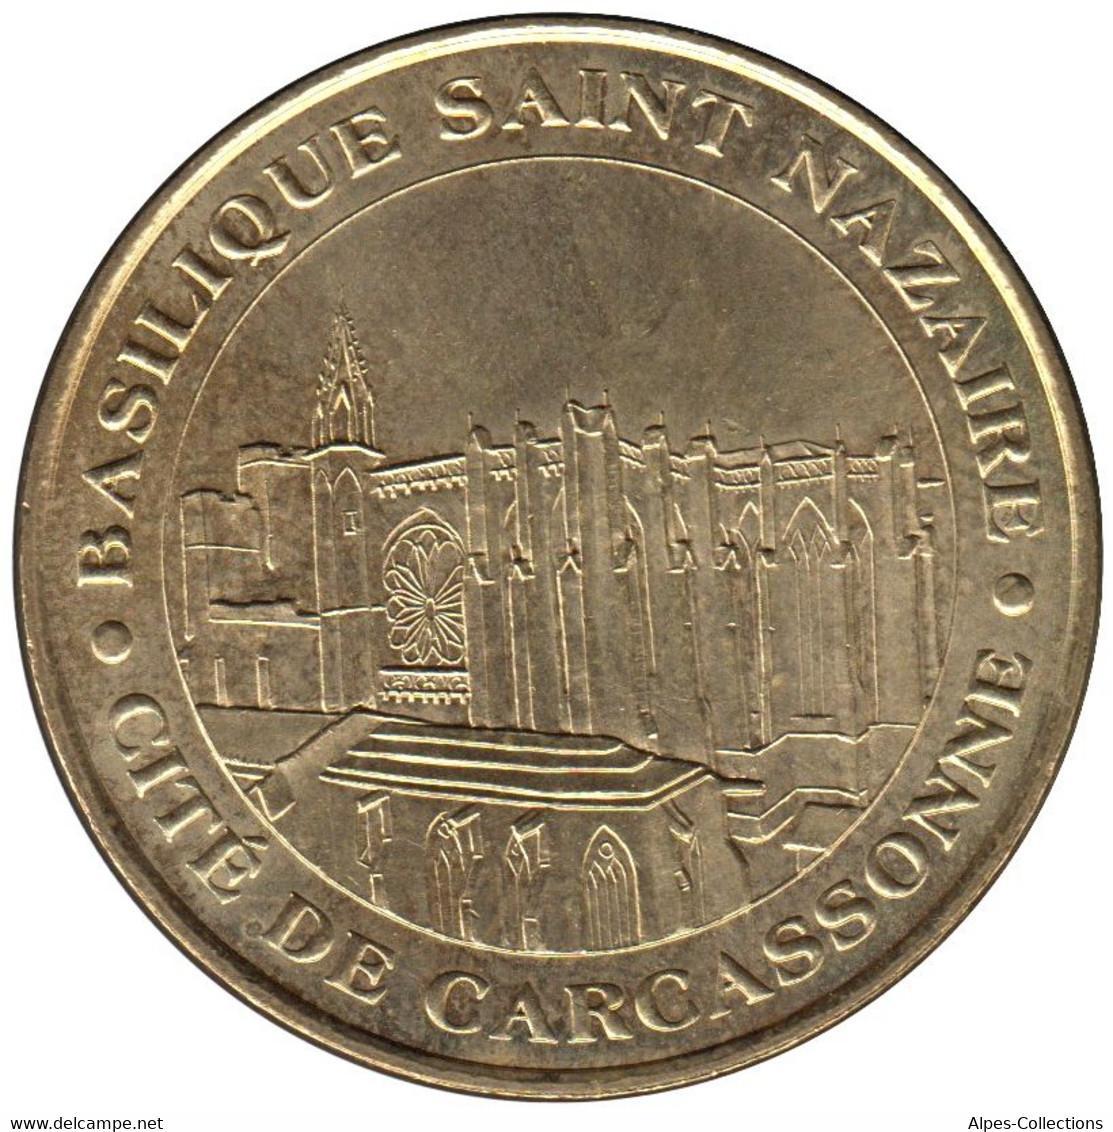 11-0016 - JETON TOURISTIQUE MDP - Basilique Saint-Nazaire - Carcassonne - 2006.1 - 2006